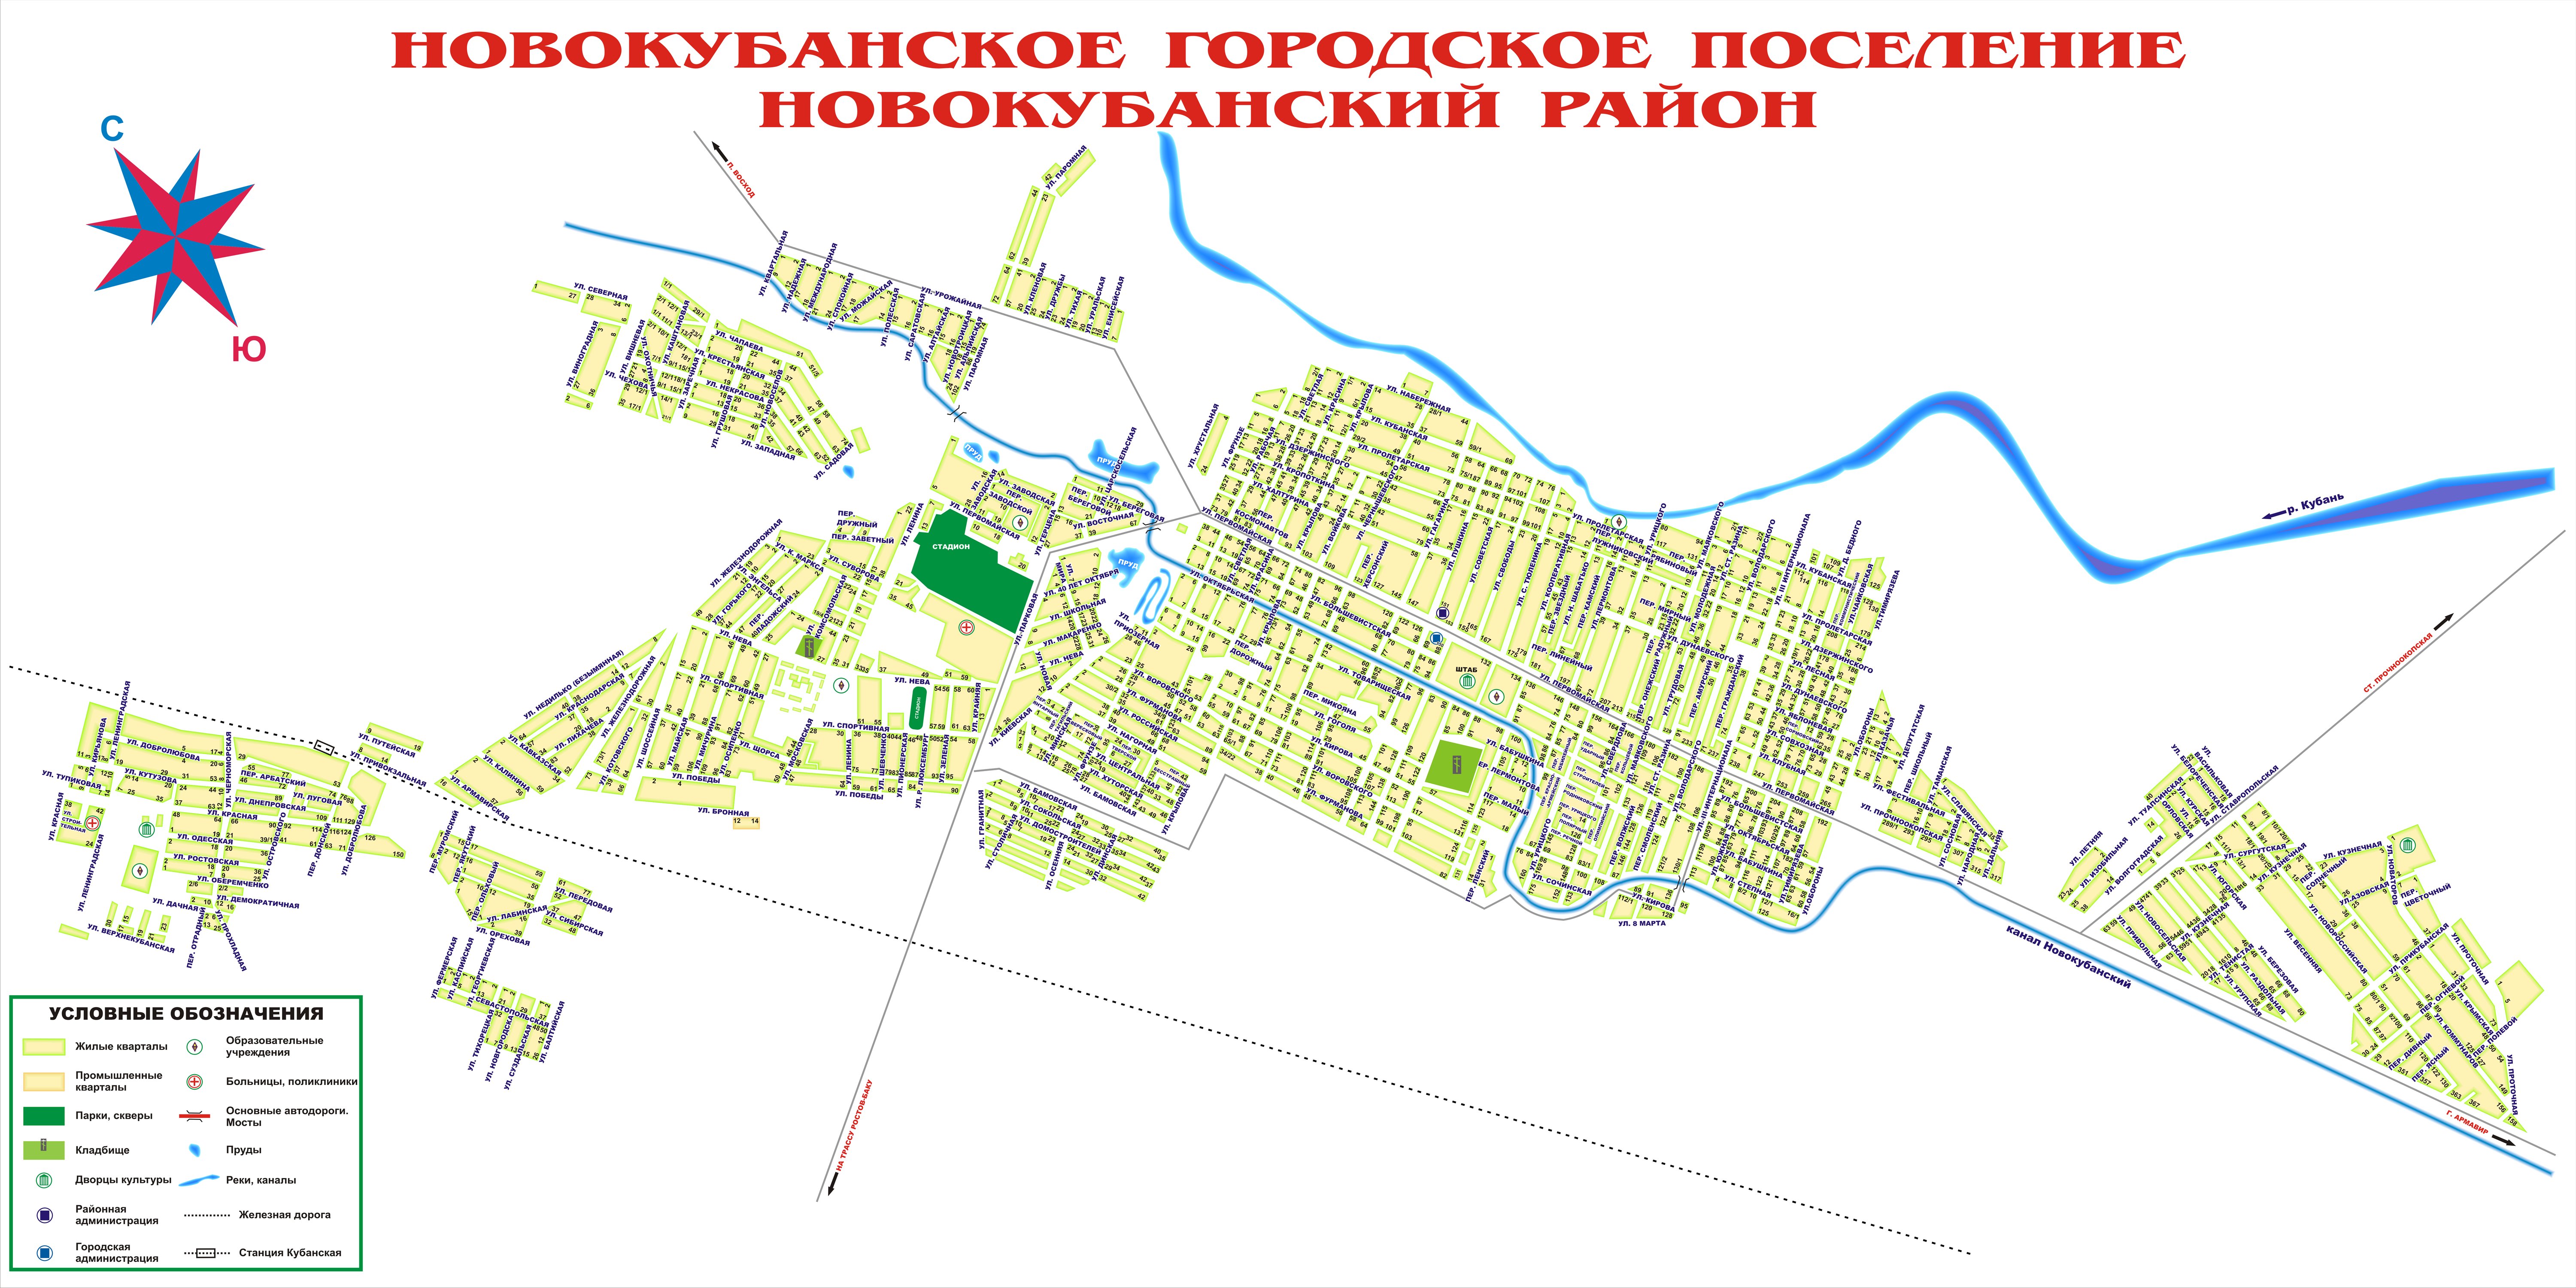 Новокубанск на карте края